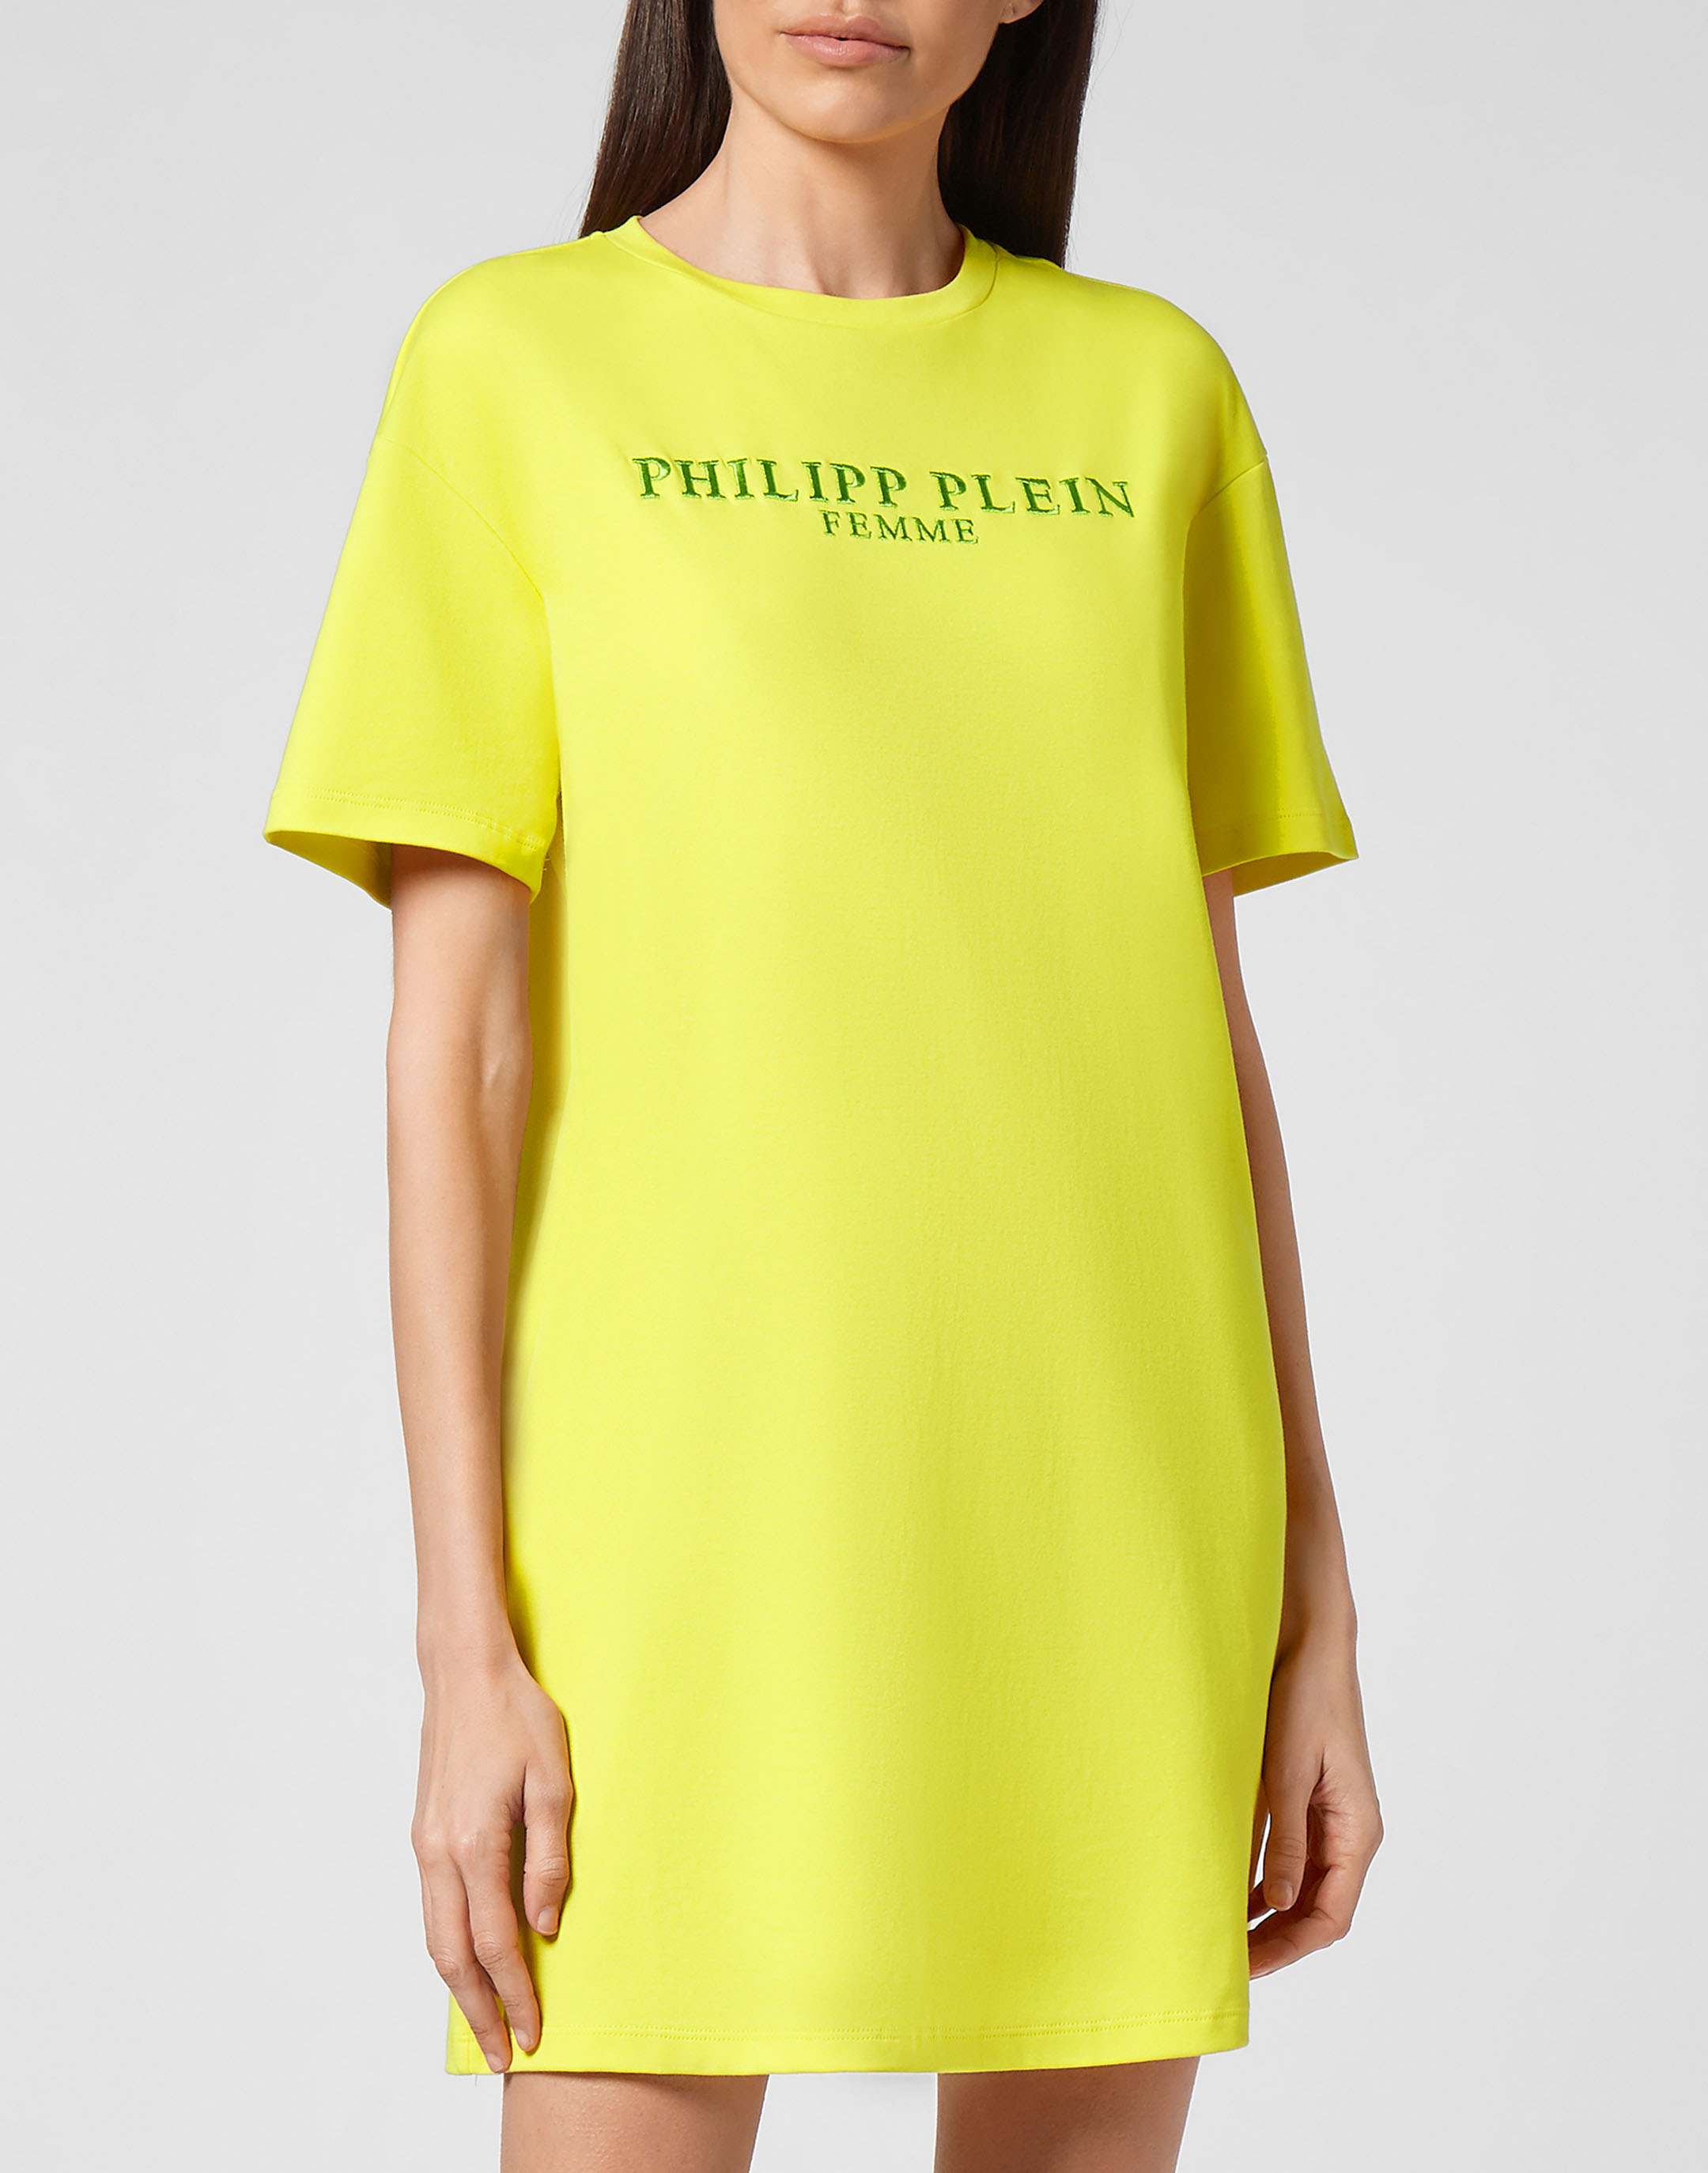 T-shirt Dress Iconic Plein | Philipp Plein Outlet